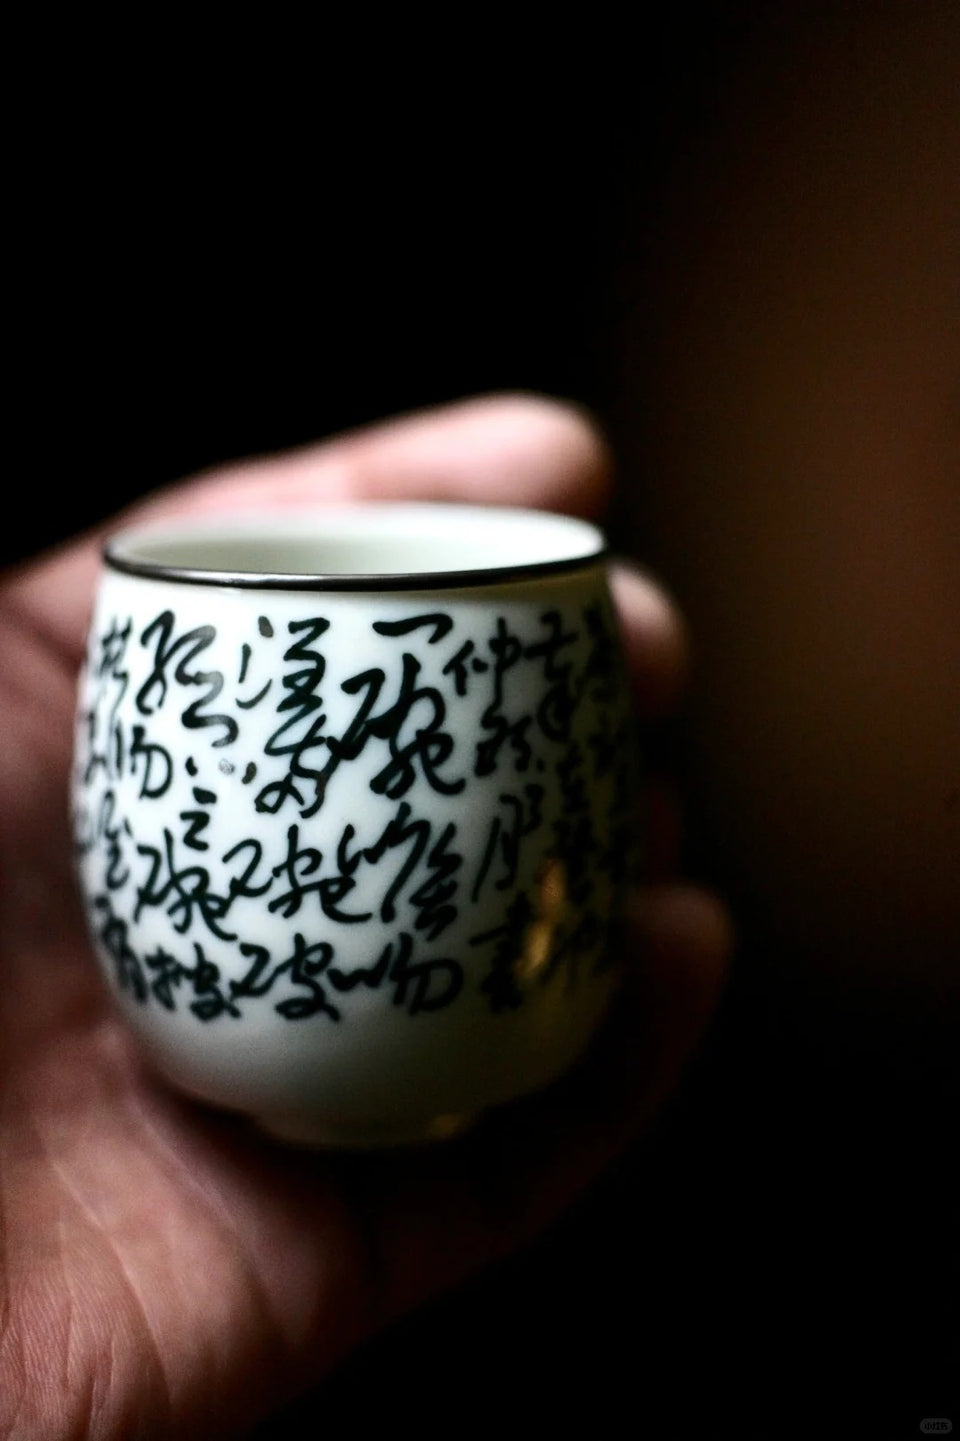 Qinghua "Seven Bowls of Tea" Host Teacup Series 3